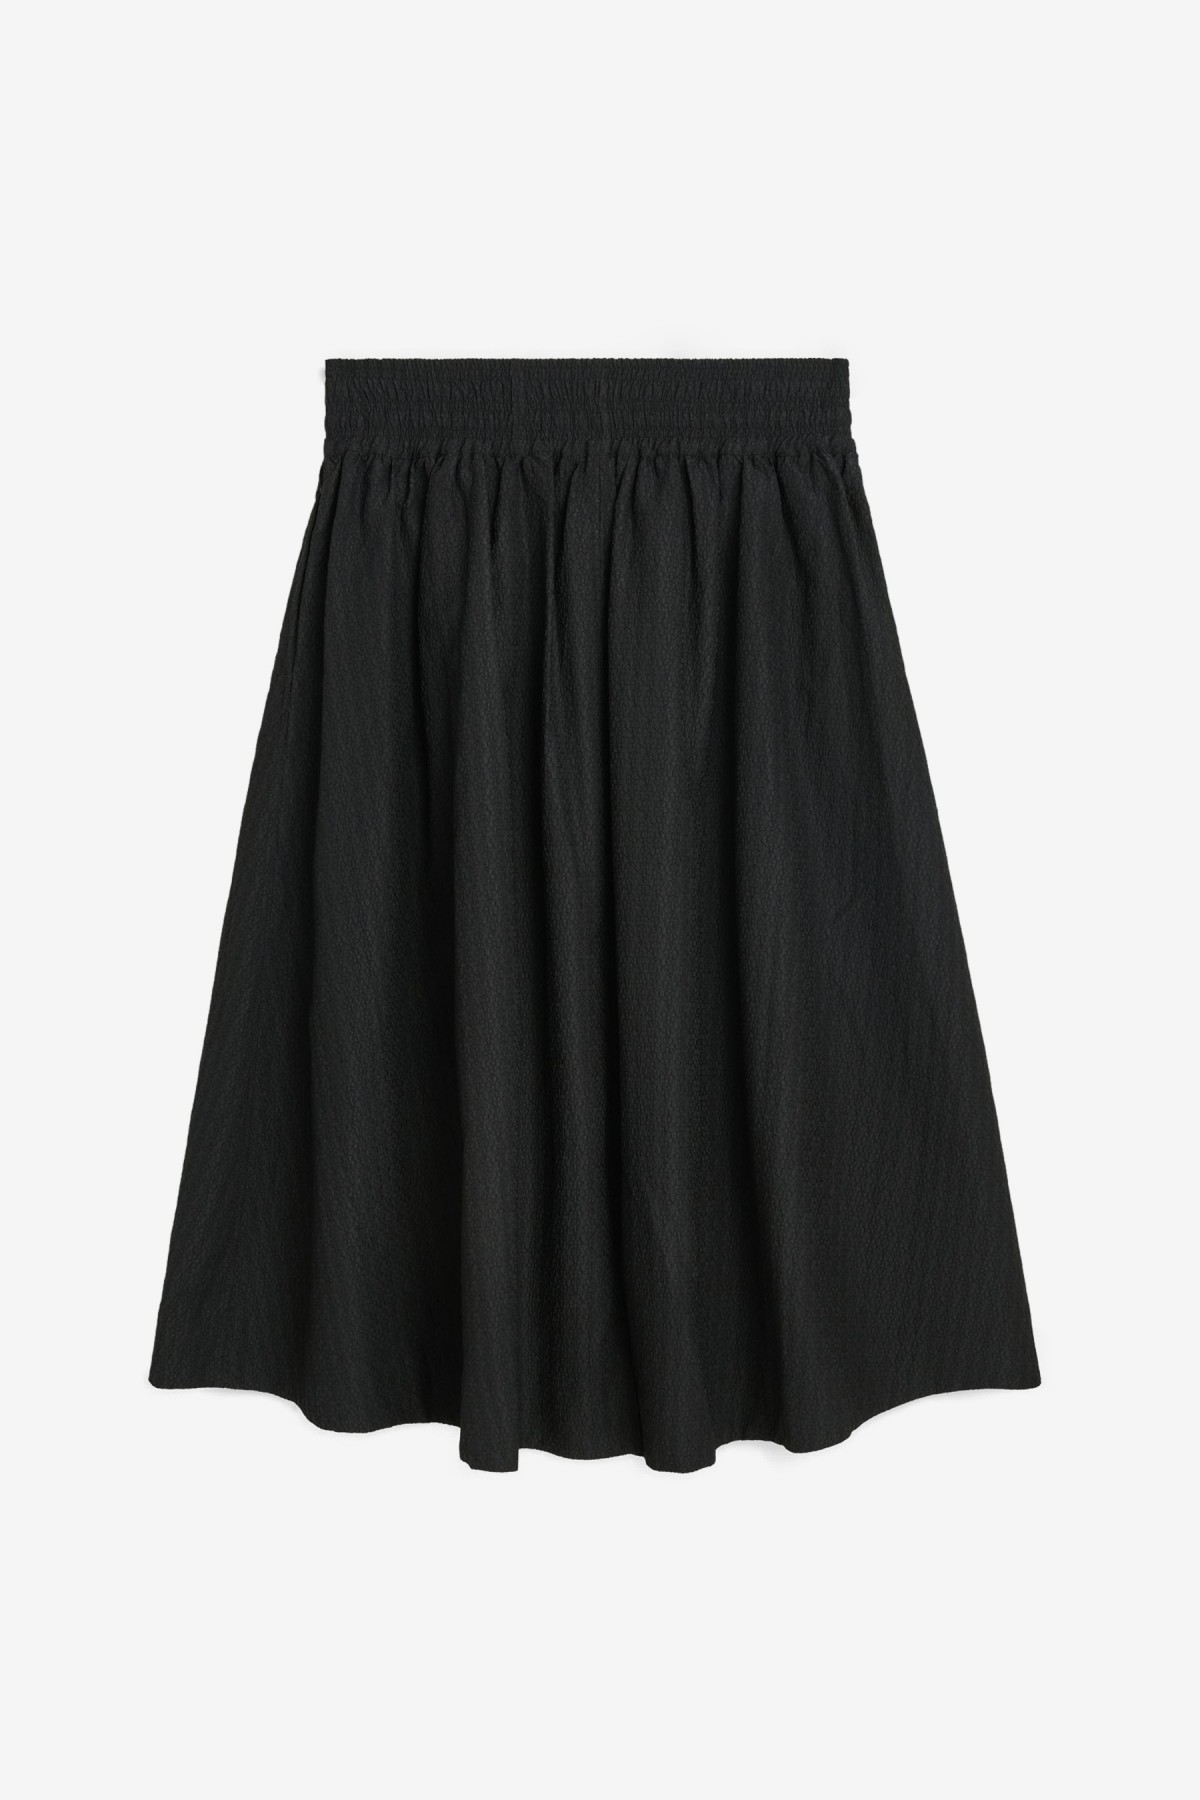 Soulland Meir Skirt in Black